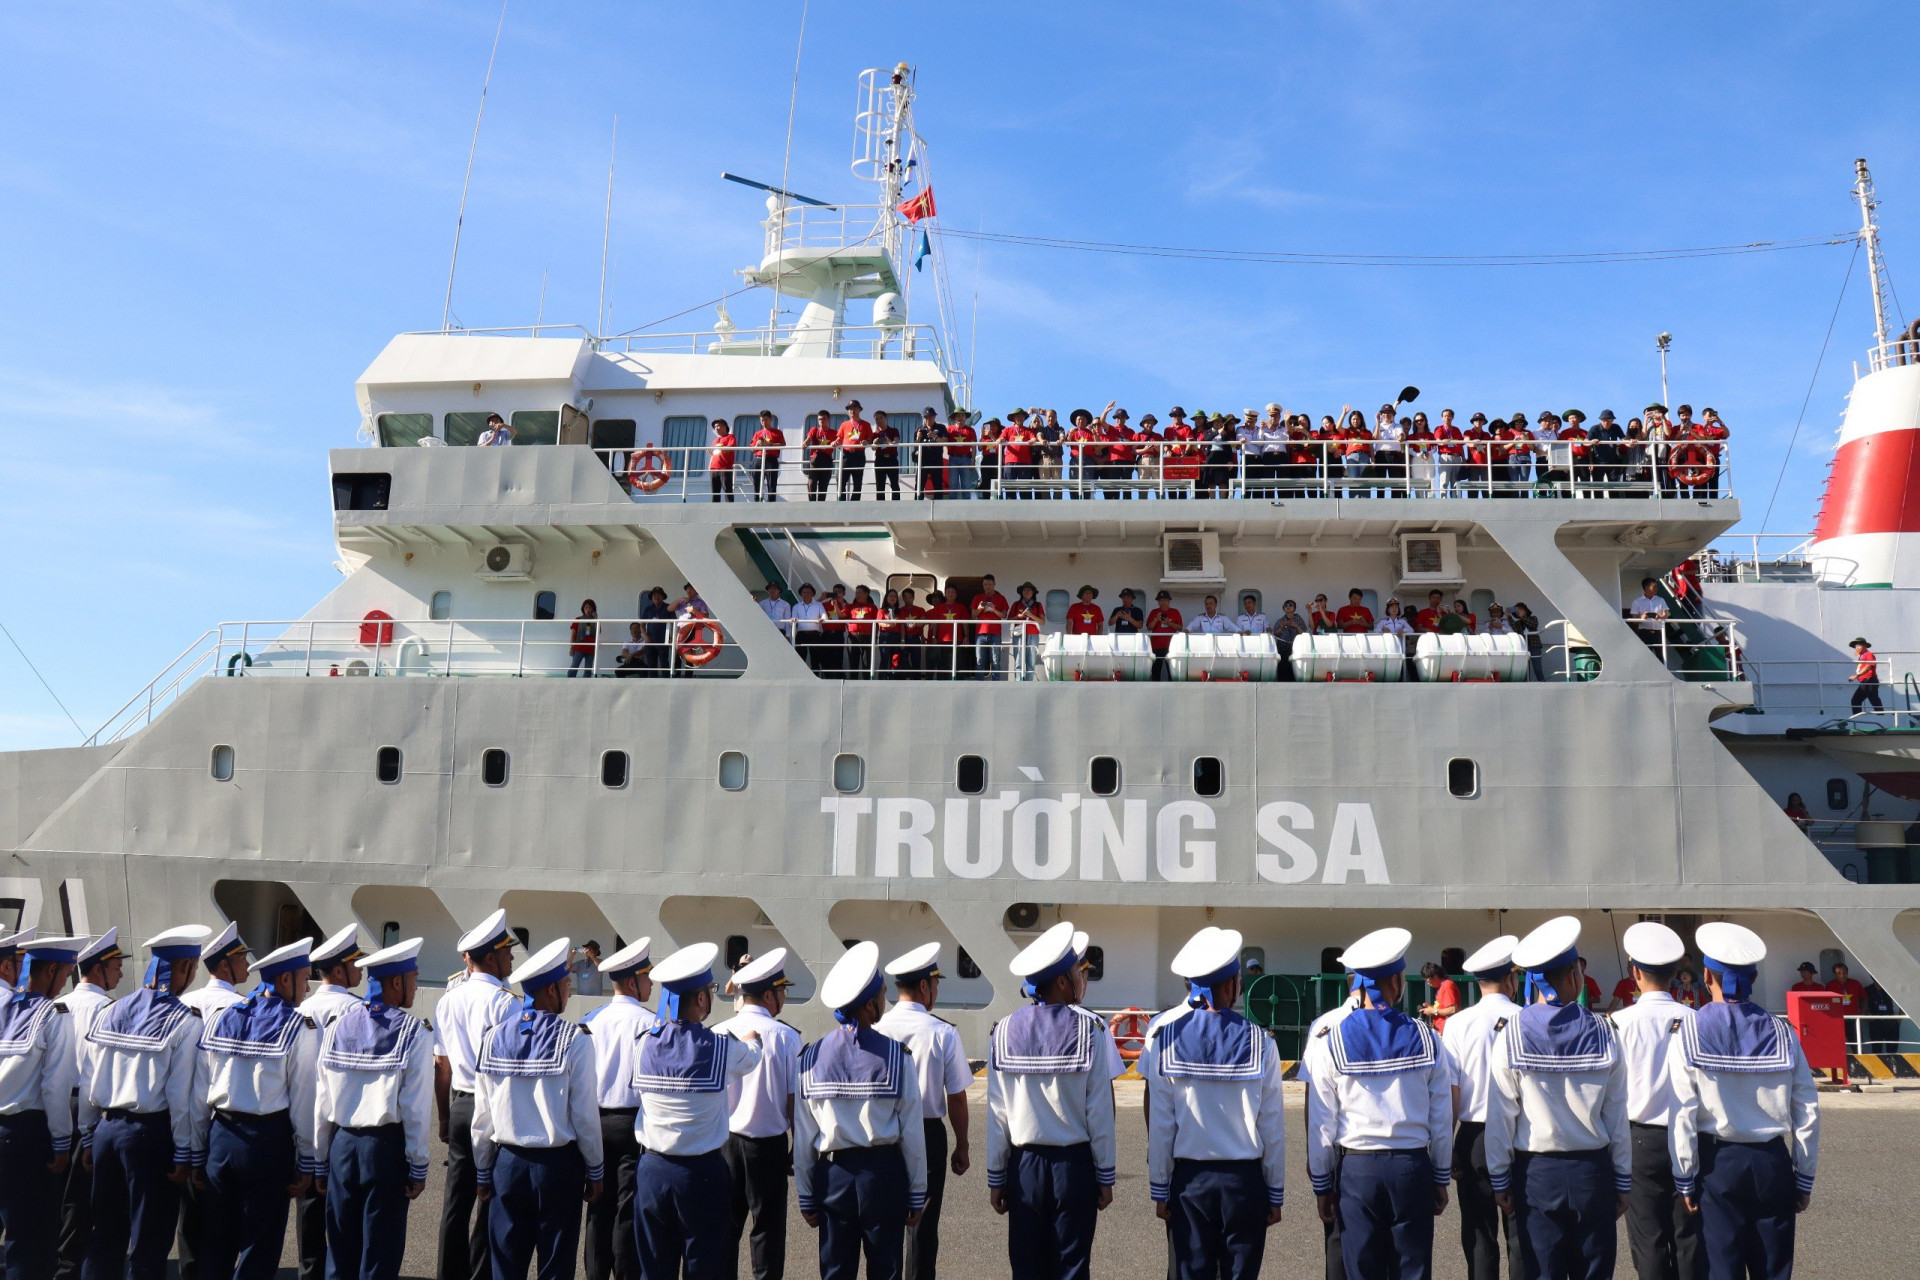 Đoàn  công  tác  vẫy  tay  chào  cán  bộ  chiến  sĩ  khi  tàu  chuẩn  bị  rời  cảng.